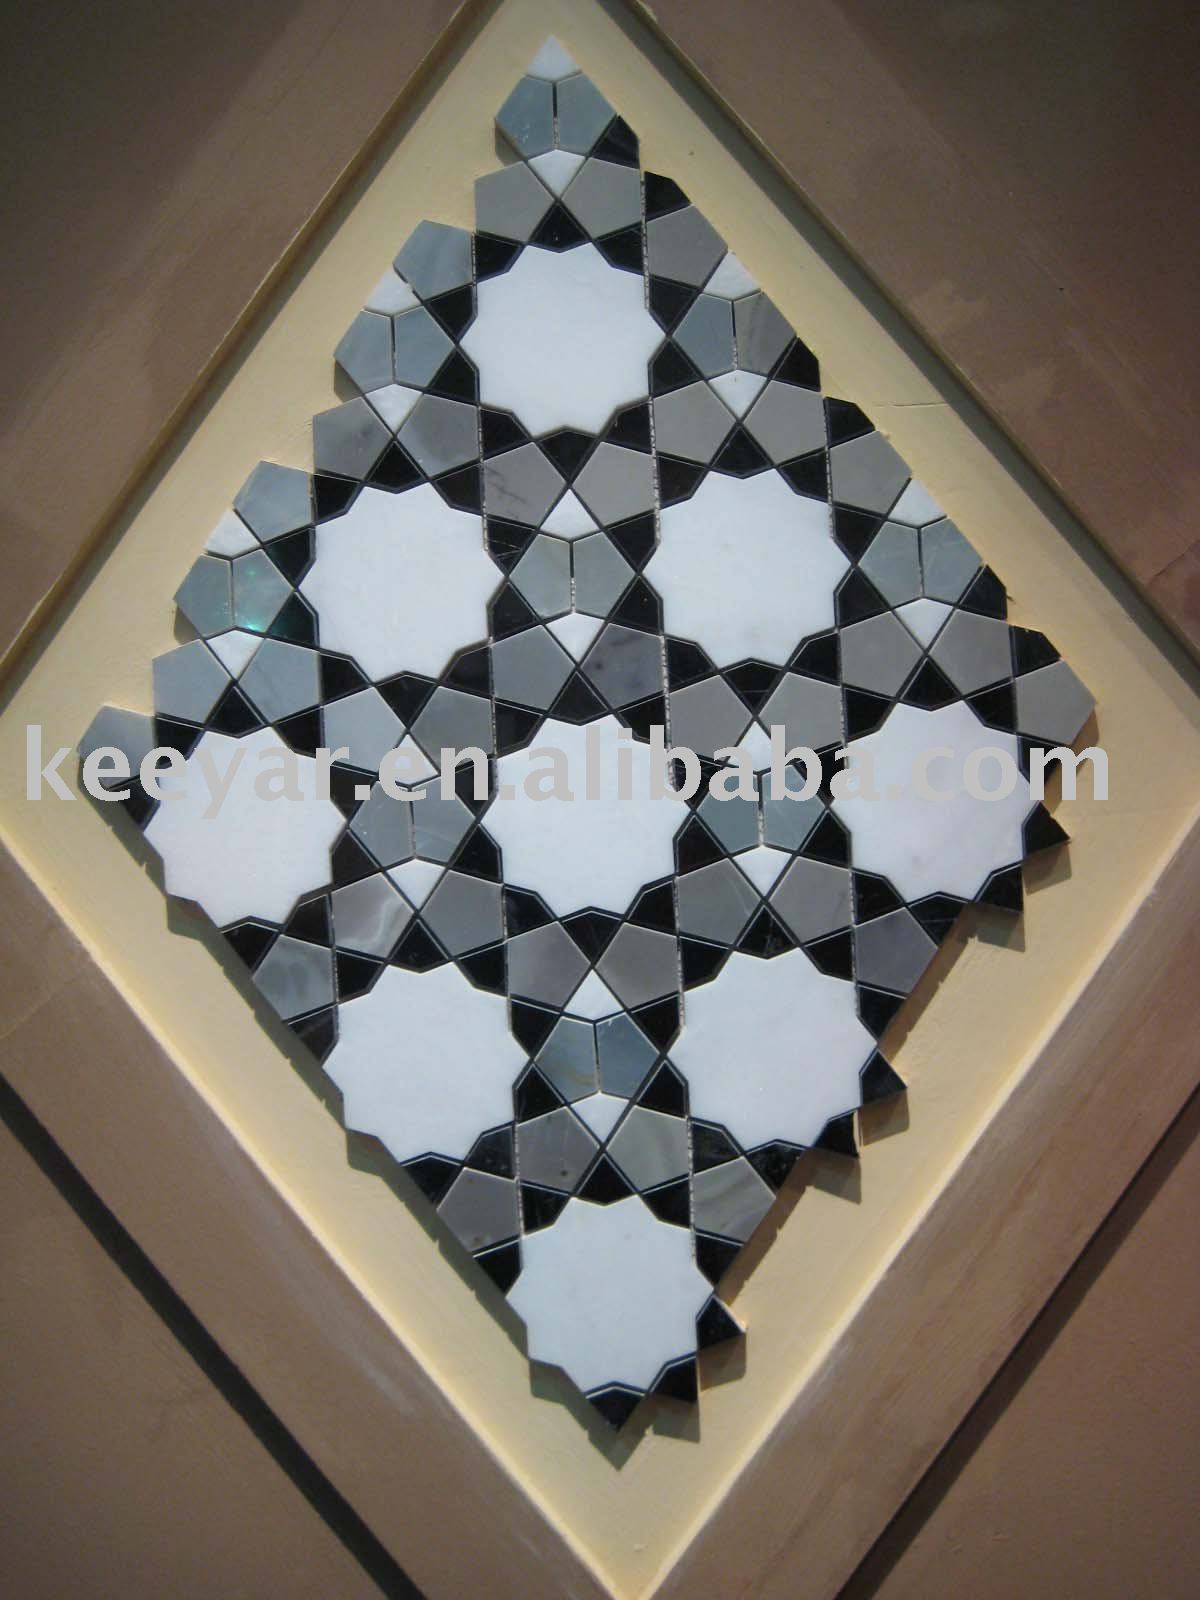 Zillij mosaics design tool --taprats, Moroccan Tile Designs